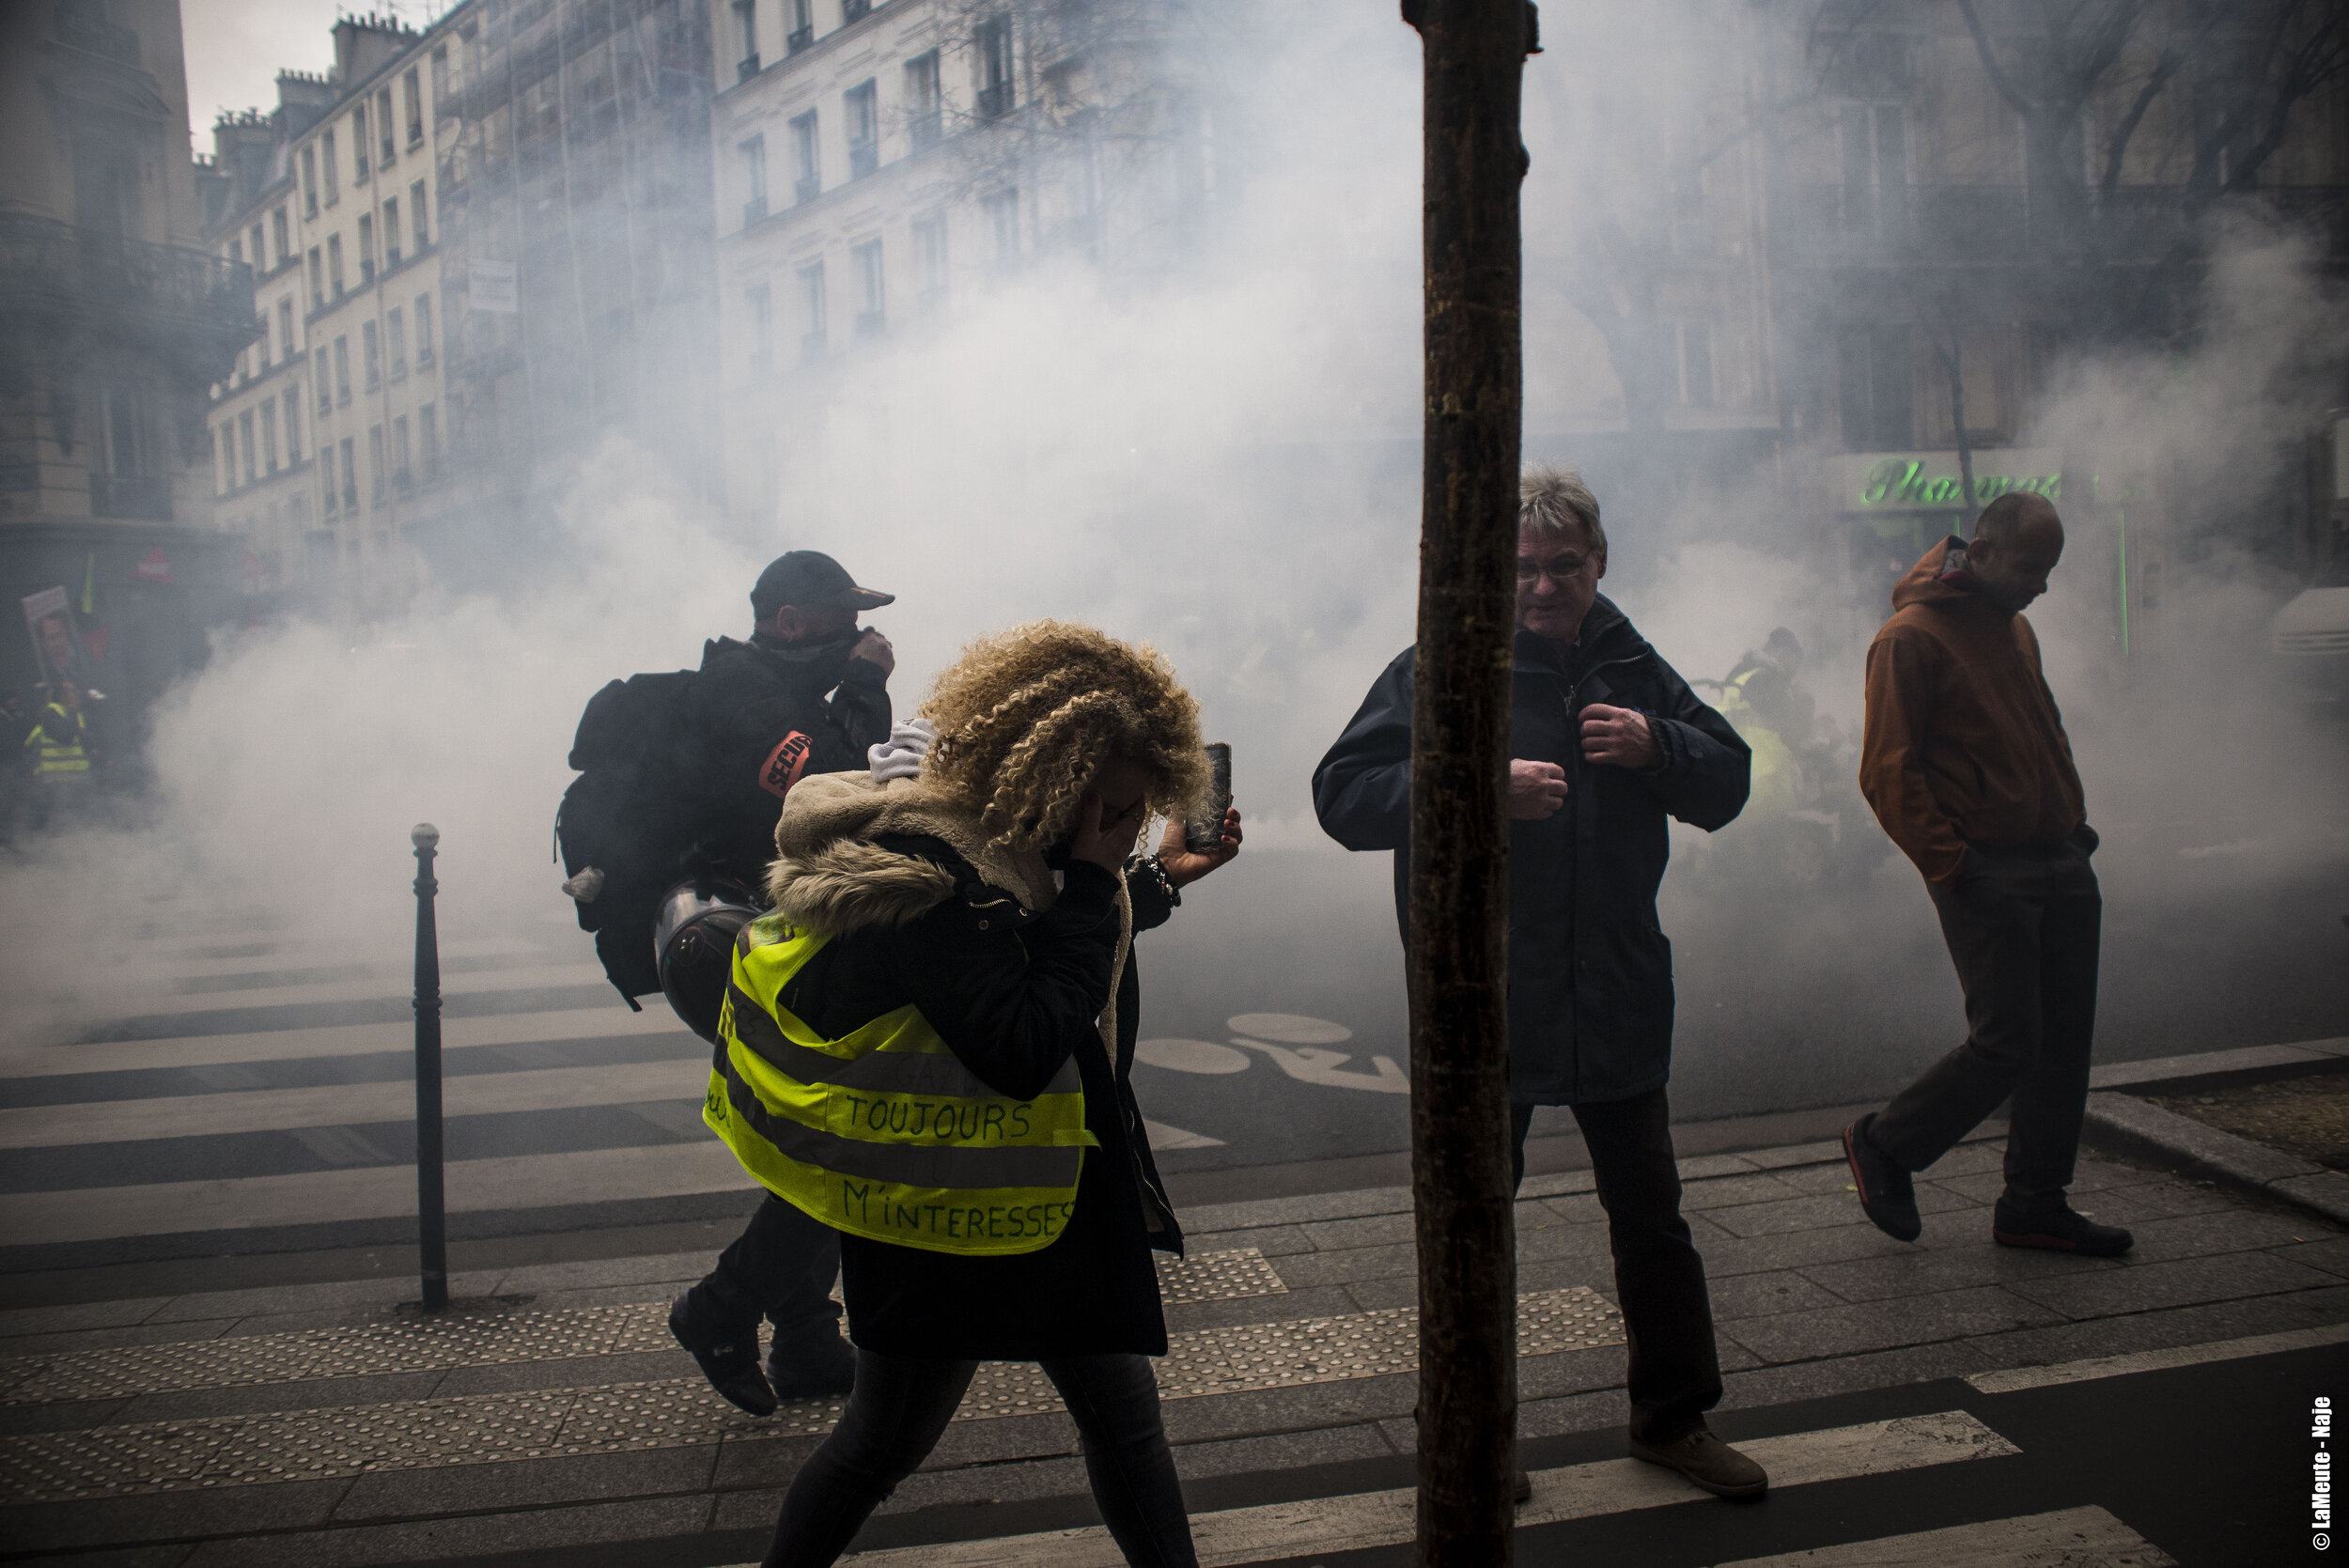   Une femme Gilet Jaune essaye de s’éloigner de la fumée des gaz lacrymogènes.  ©LaMeute - Naje.      